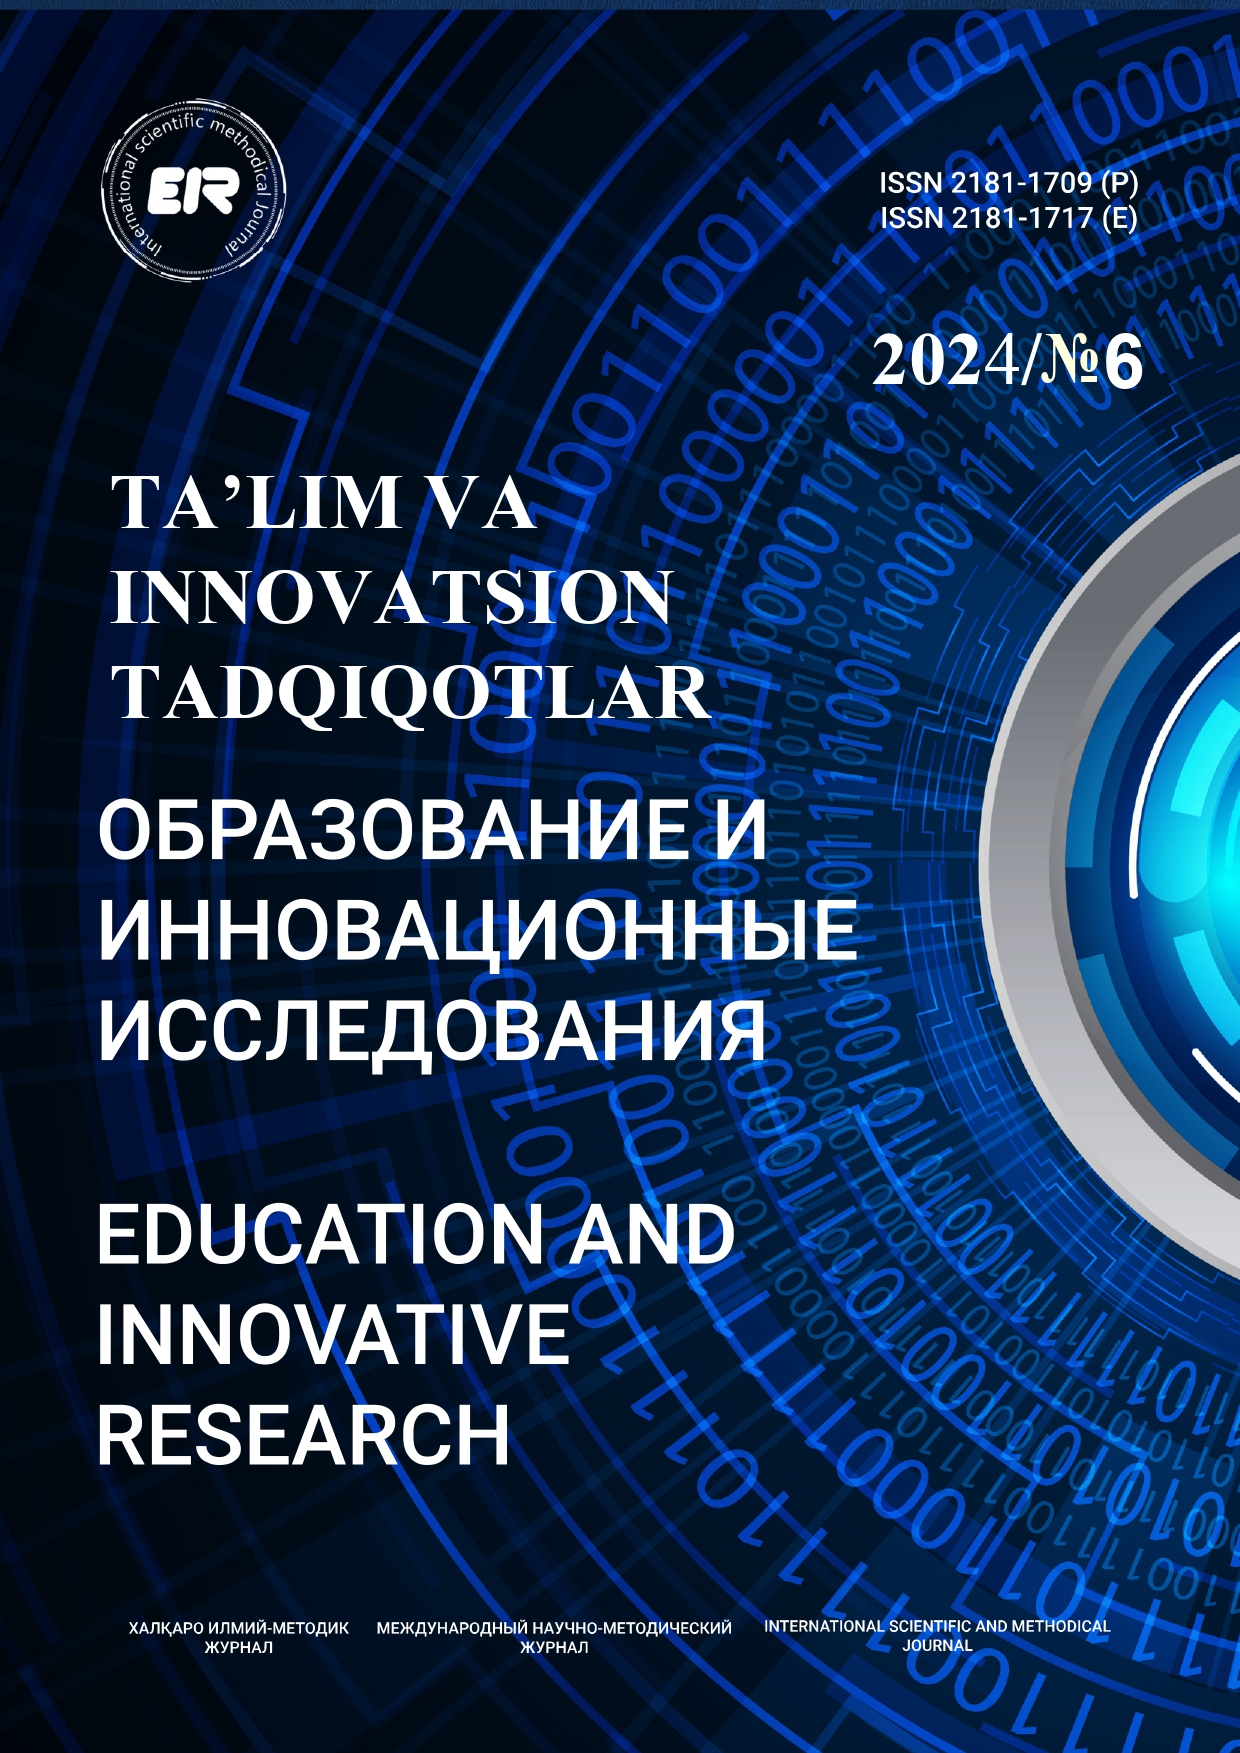 					Показать № 6 (2024): Образование и инновационные исследования
				